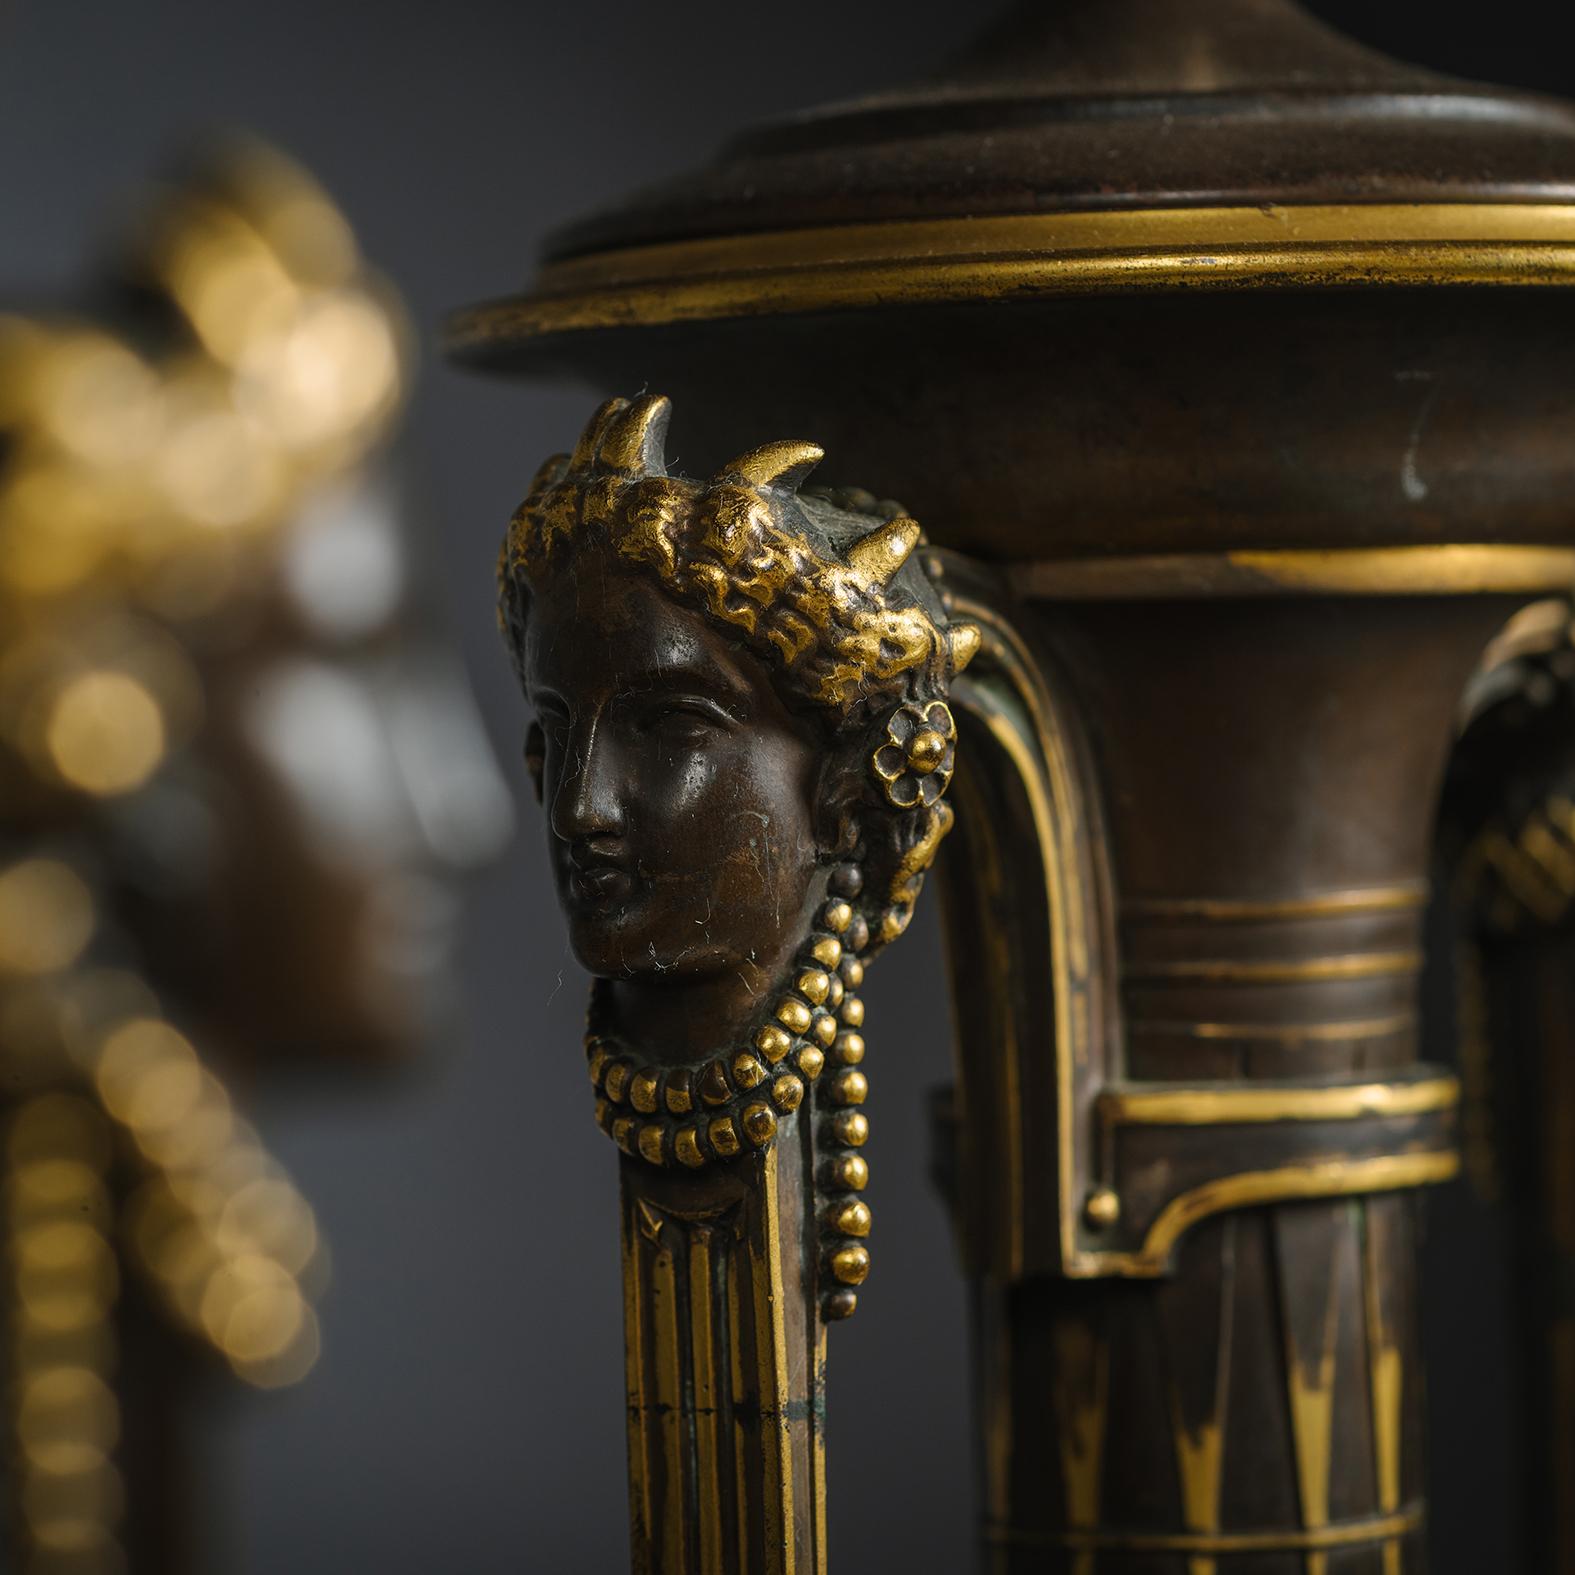 Ein Paar Néo-Grec-Vasen aus patinierter Bronze, als Lampen montiert, gegossen von Ferdinand Barbedienne, nach einem Modell von Henry Cahieux.  

Jede Vase ist fein gegossen, mit hermetischen Henkeln, die einen schlanken, länglichen Hals über einem